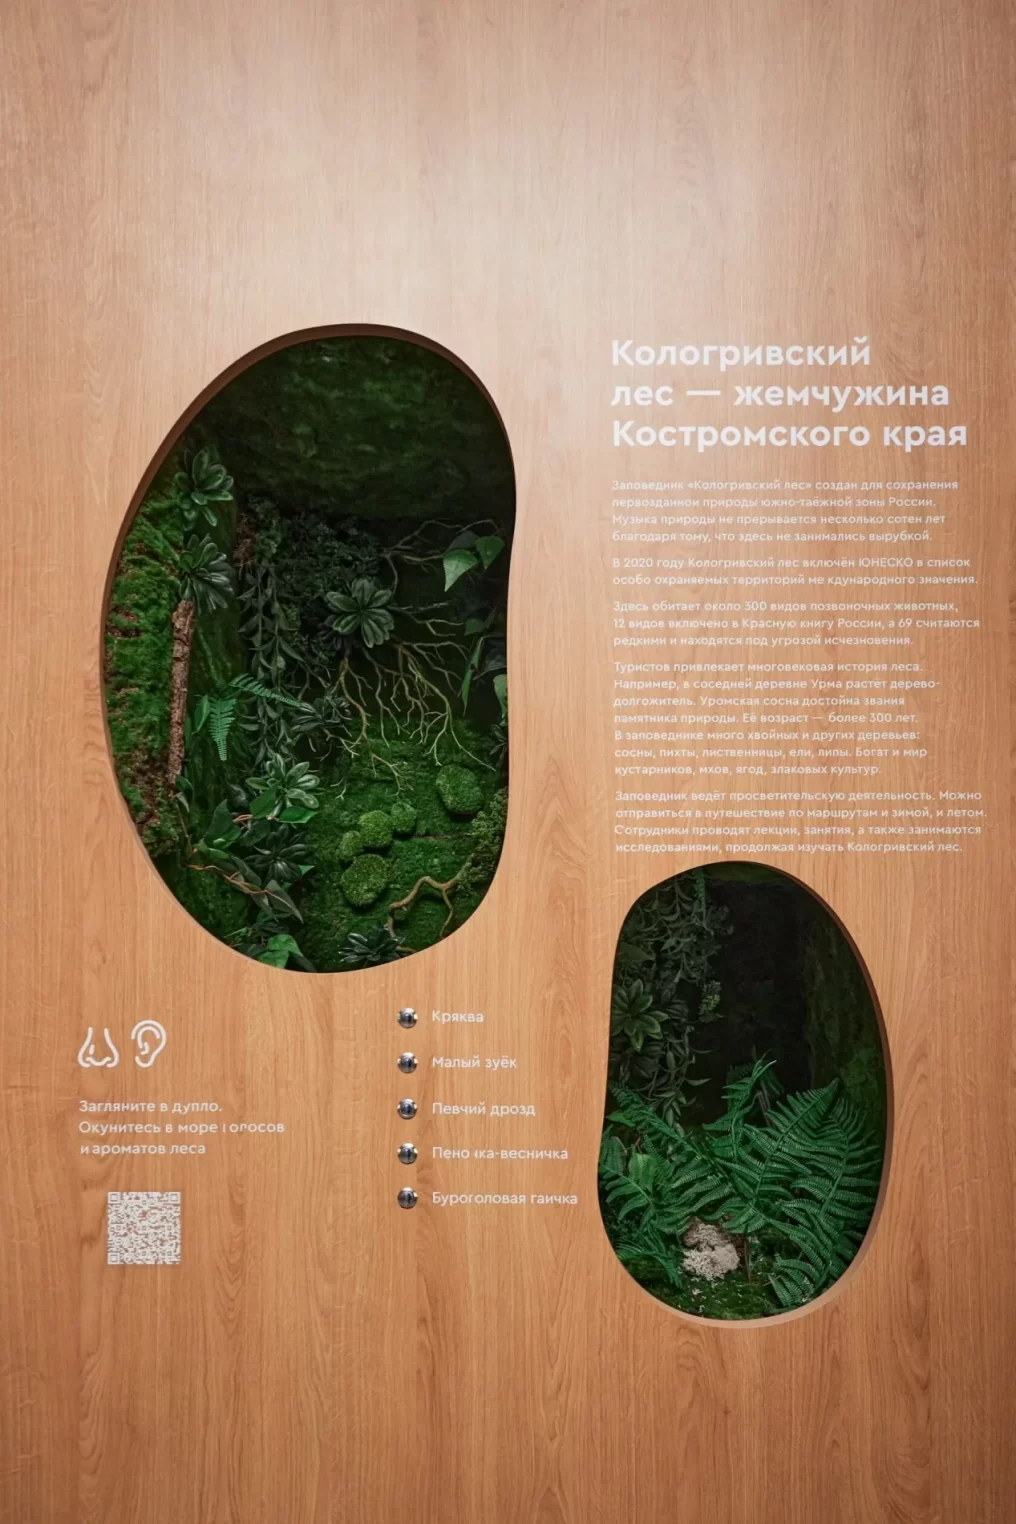 Стенд Костромской области из 9 деревьев на выставке "Россия" придумали москвичи